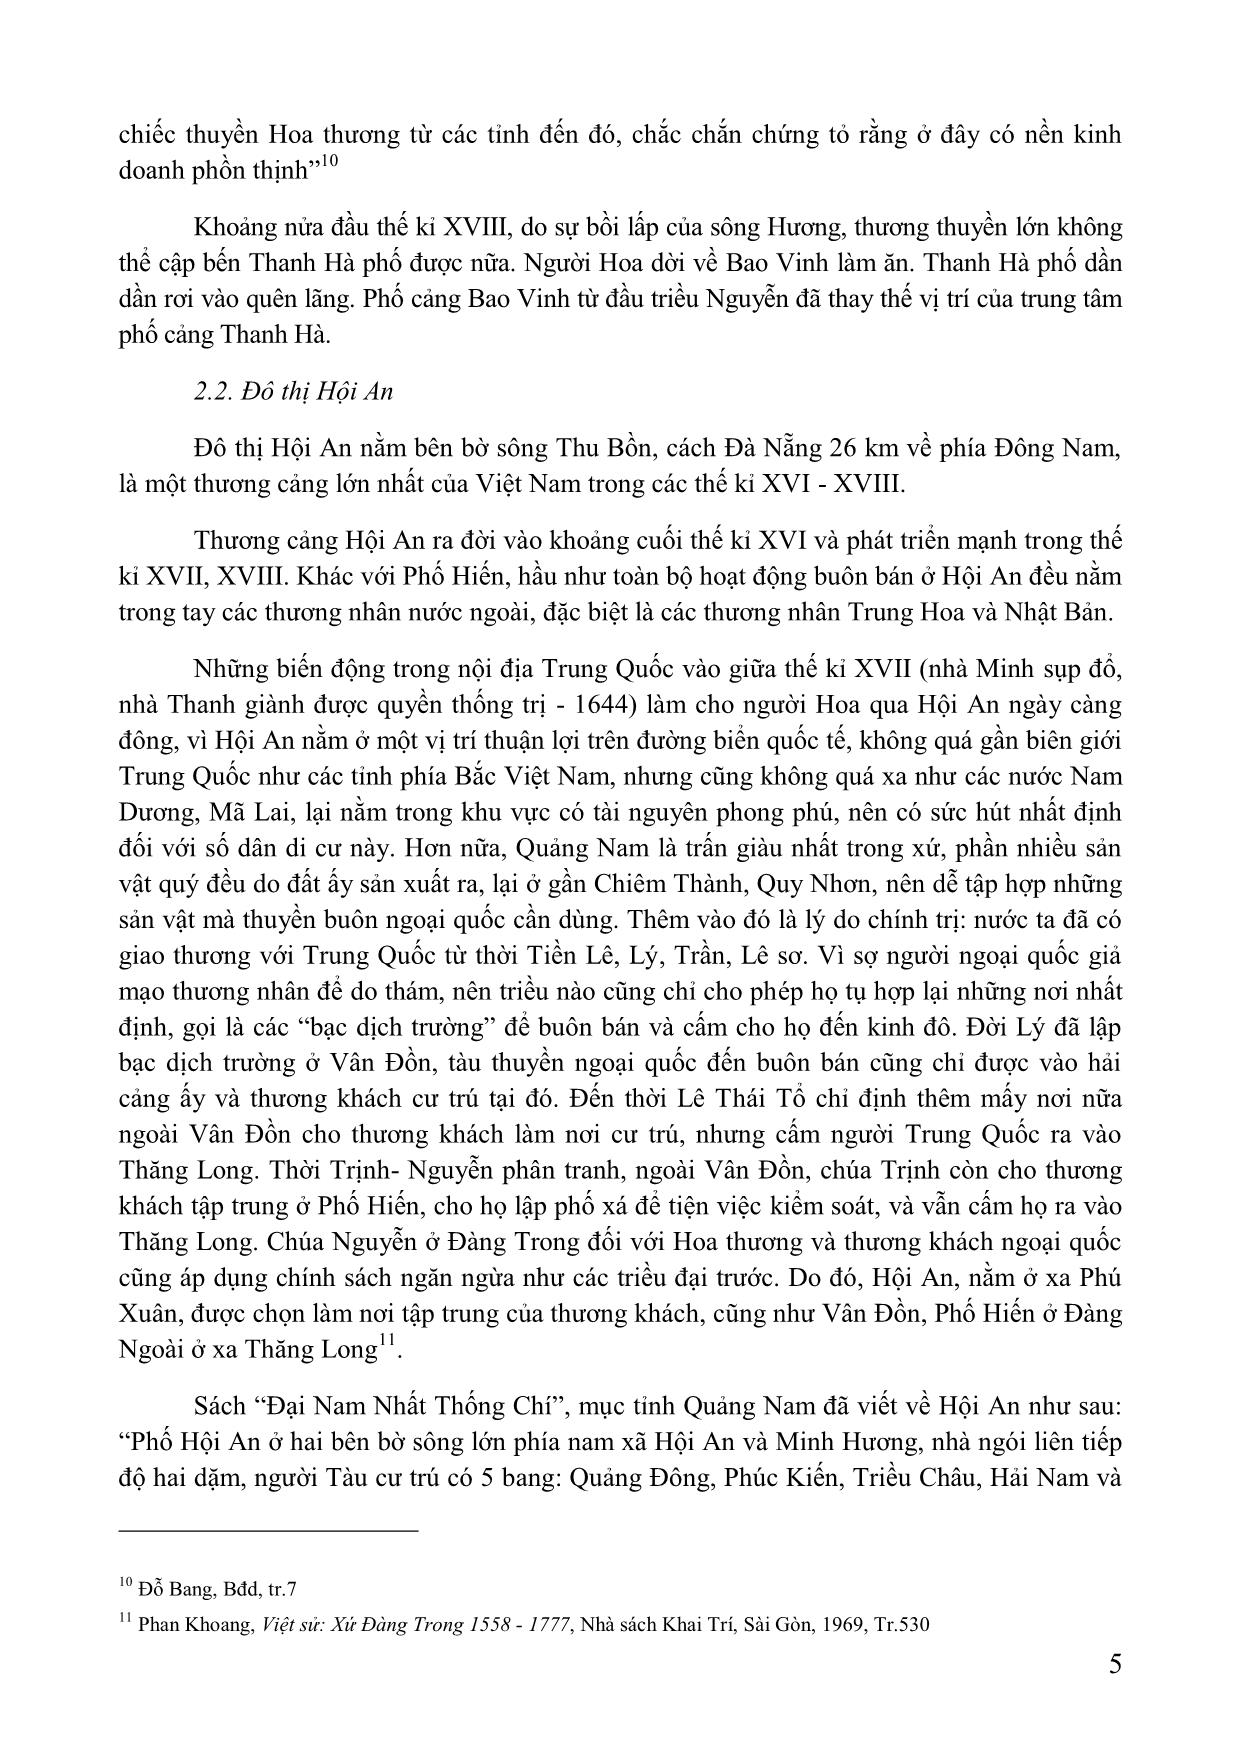 Vai trò của người hoa trong việc hình thành và phát triển các đô thị ở trung và Nam Bộ Việt Nam (thế kỉ XVII-XIX) trang 5